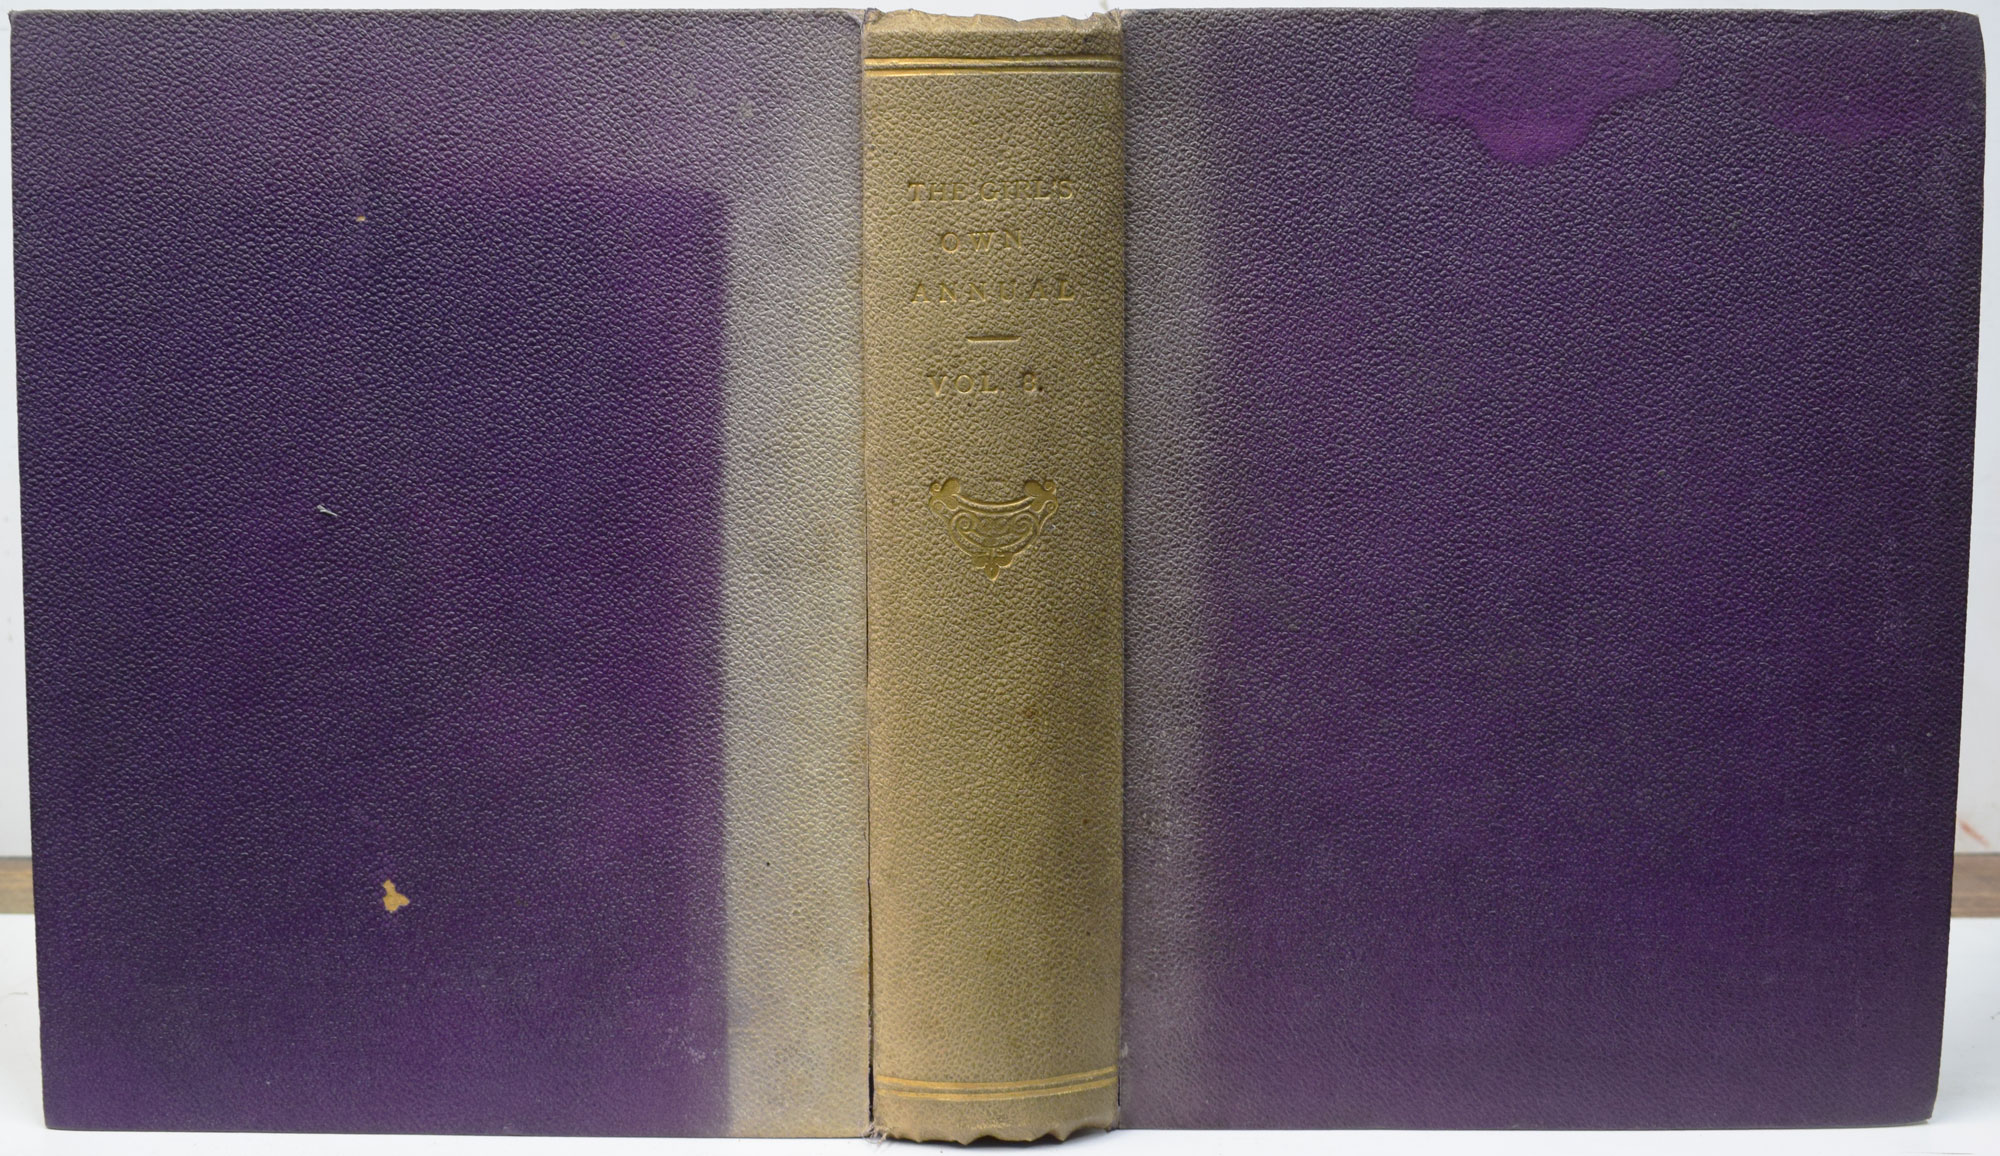 The Girl's Own Annual. Volume 8. October 1886 - November 1887.